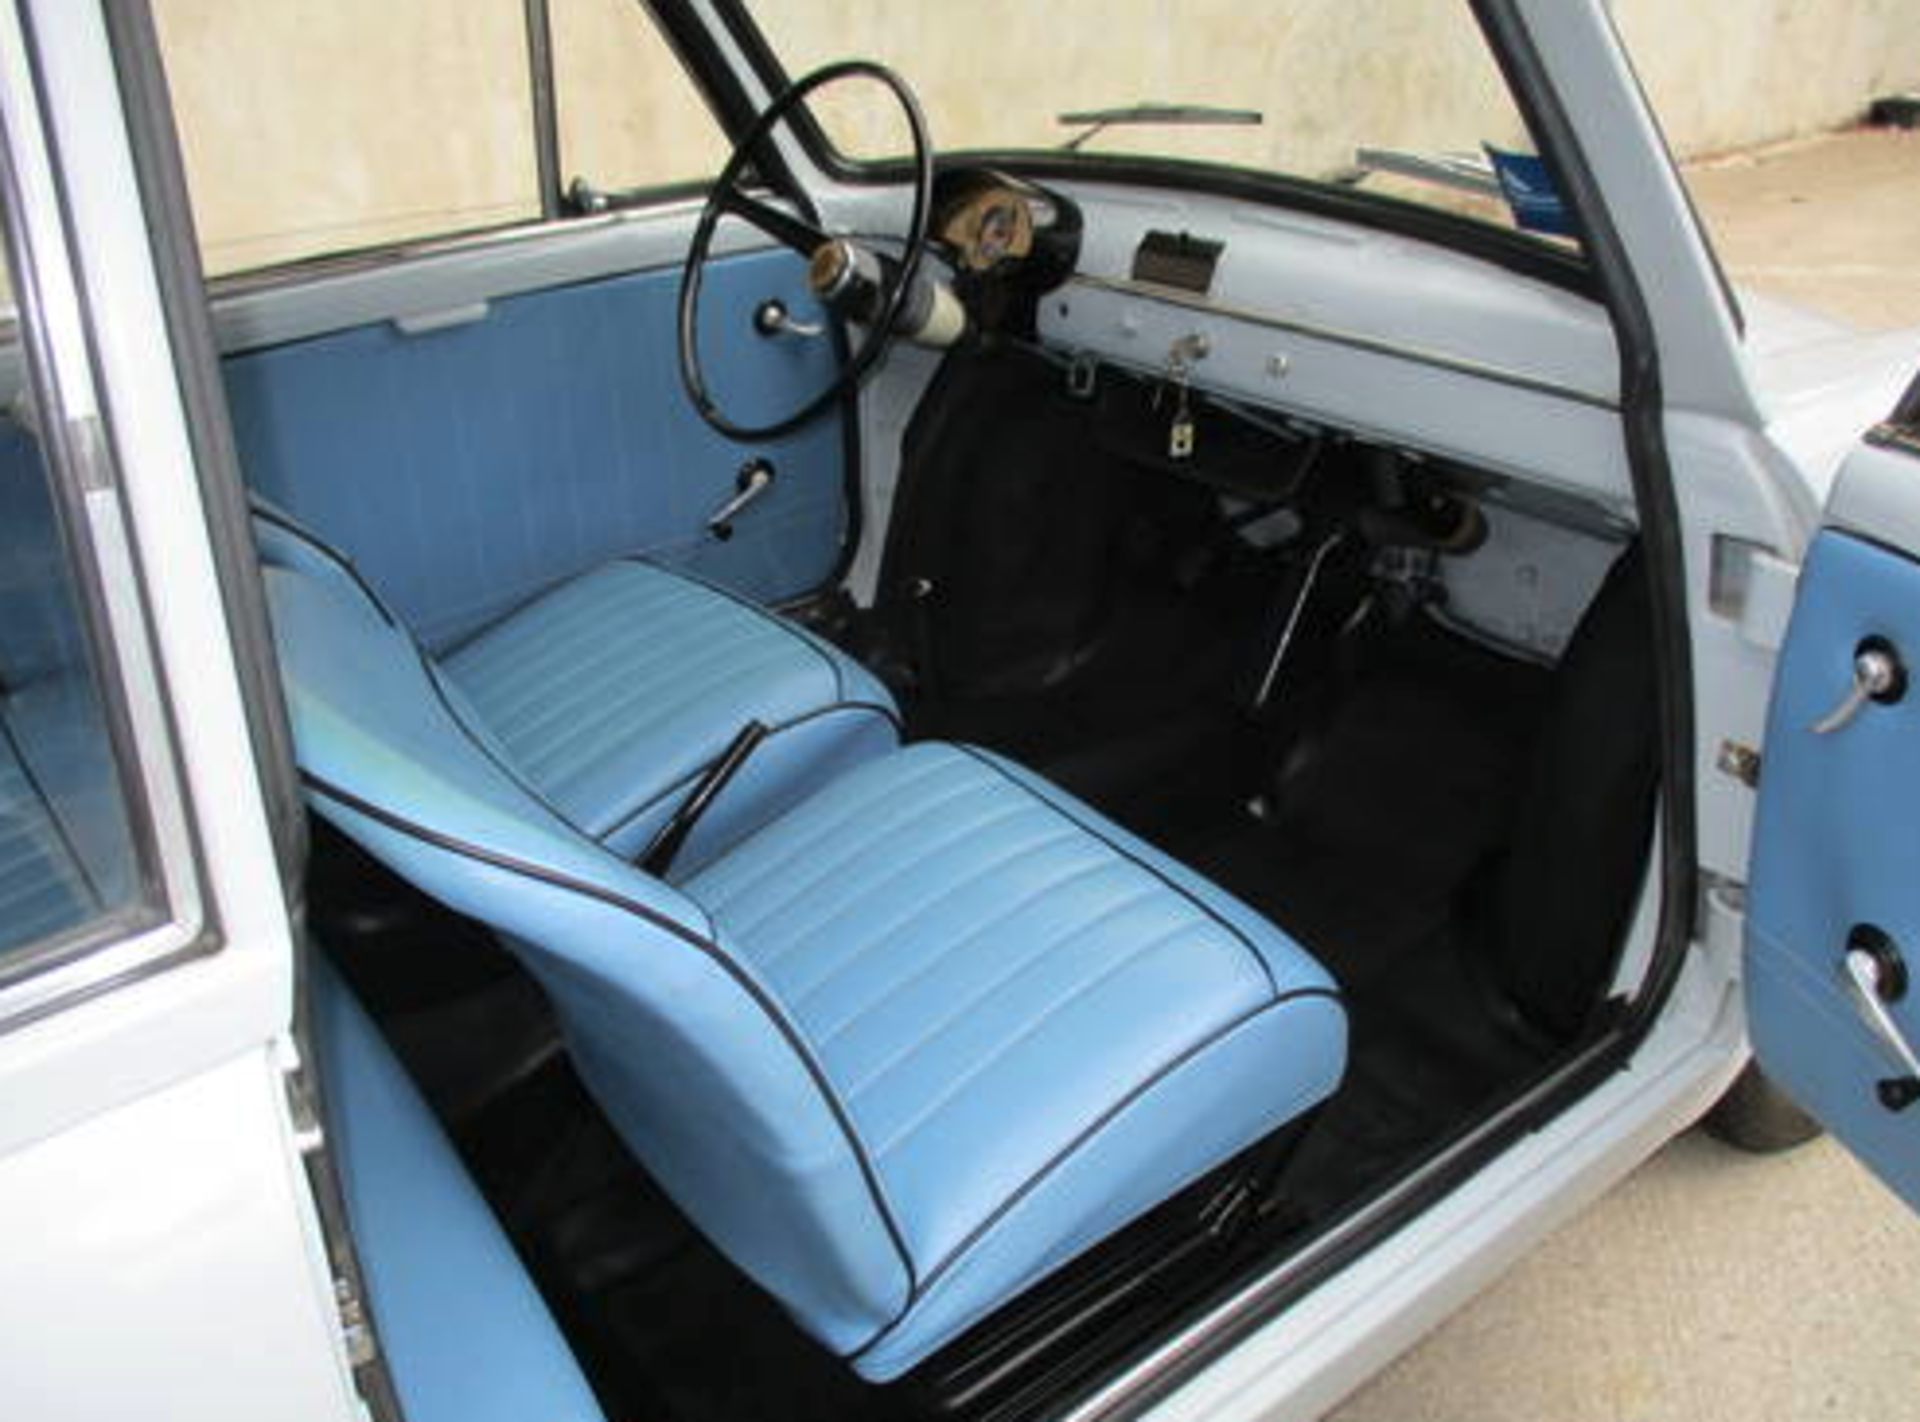 1966 Fiat Autobianchi Belina - Image 4 of 7